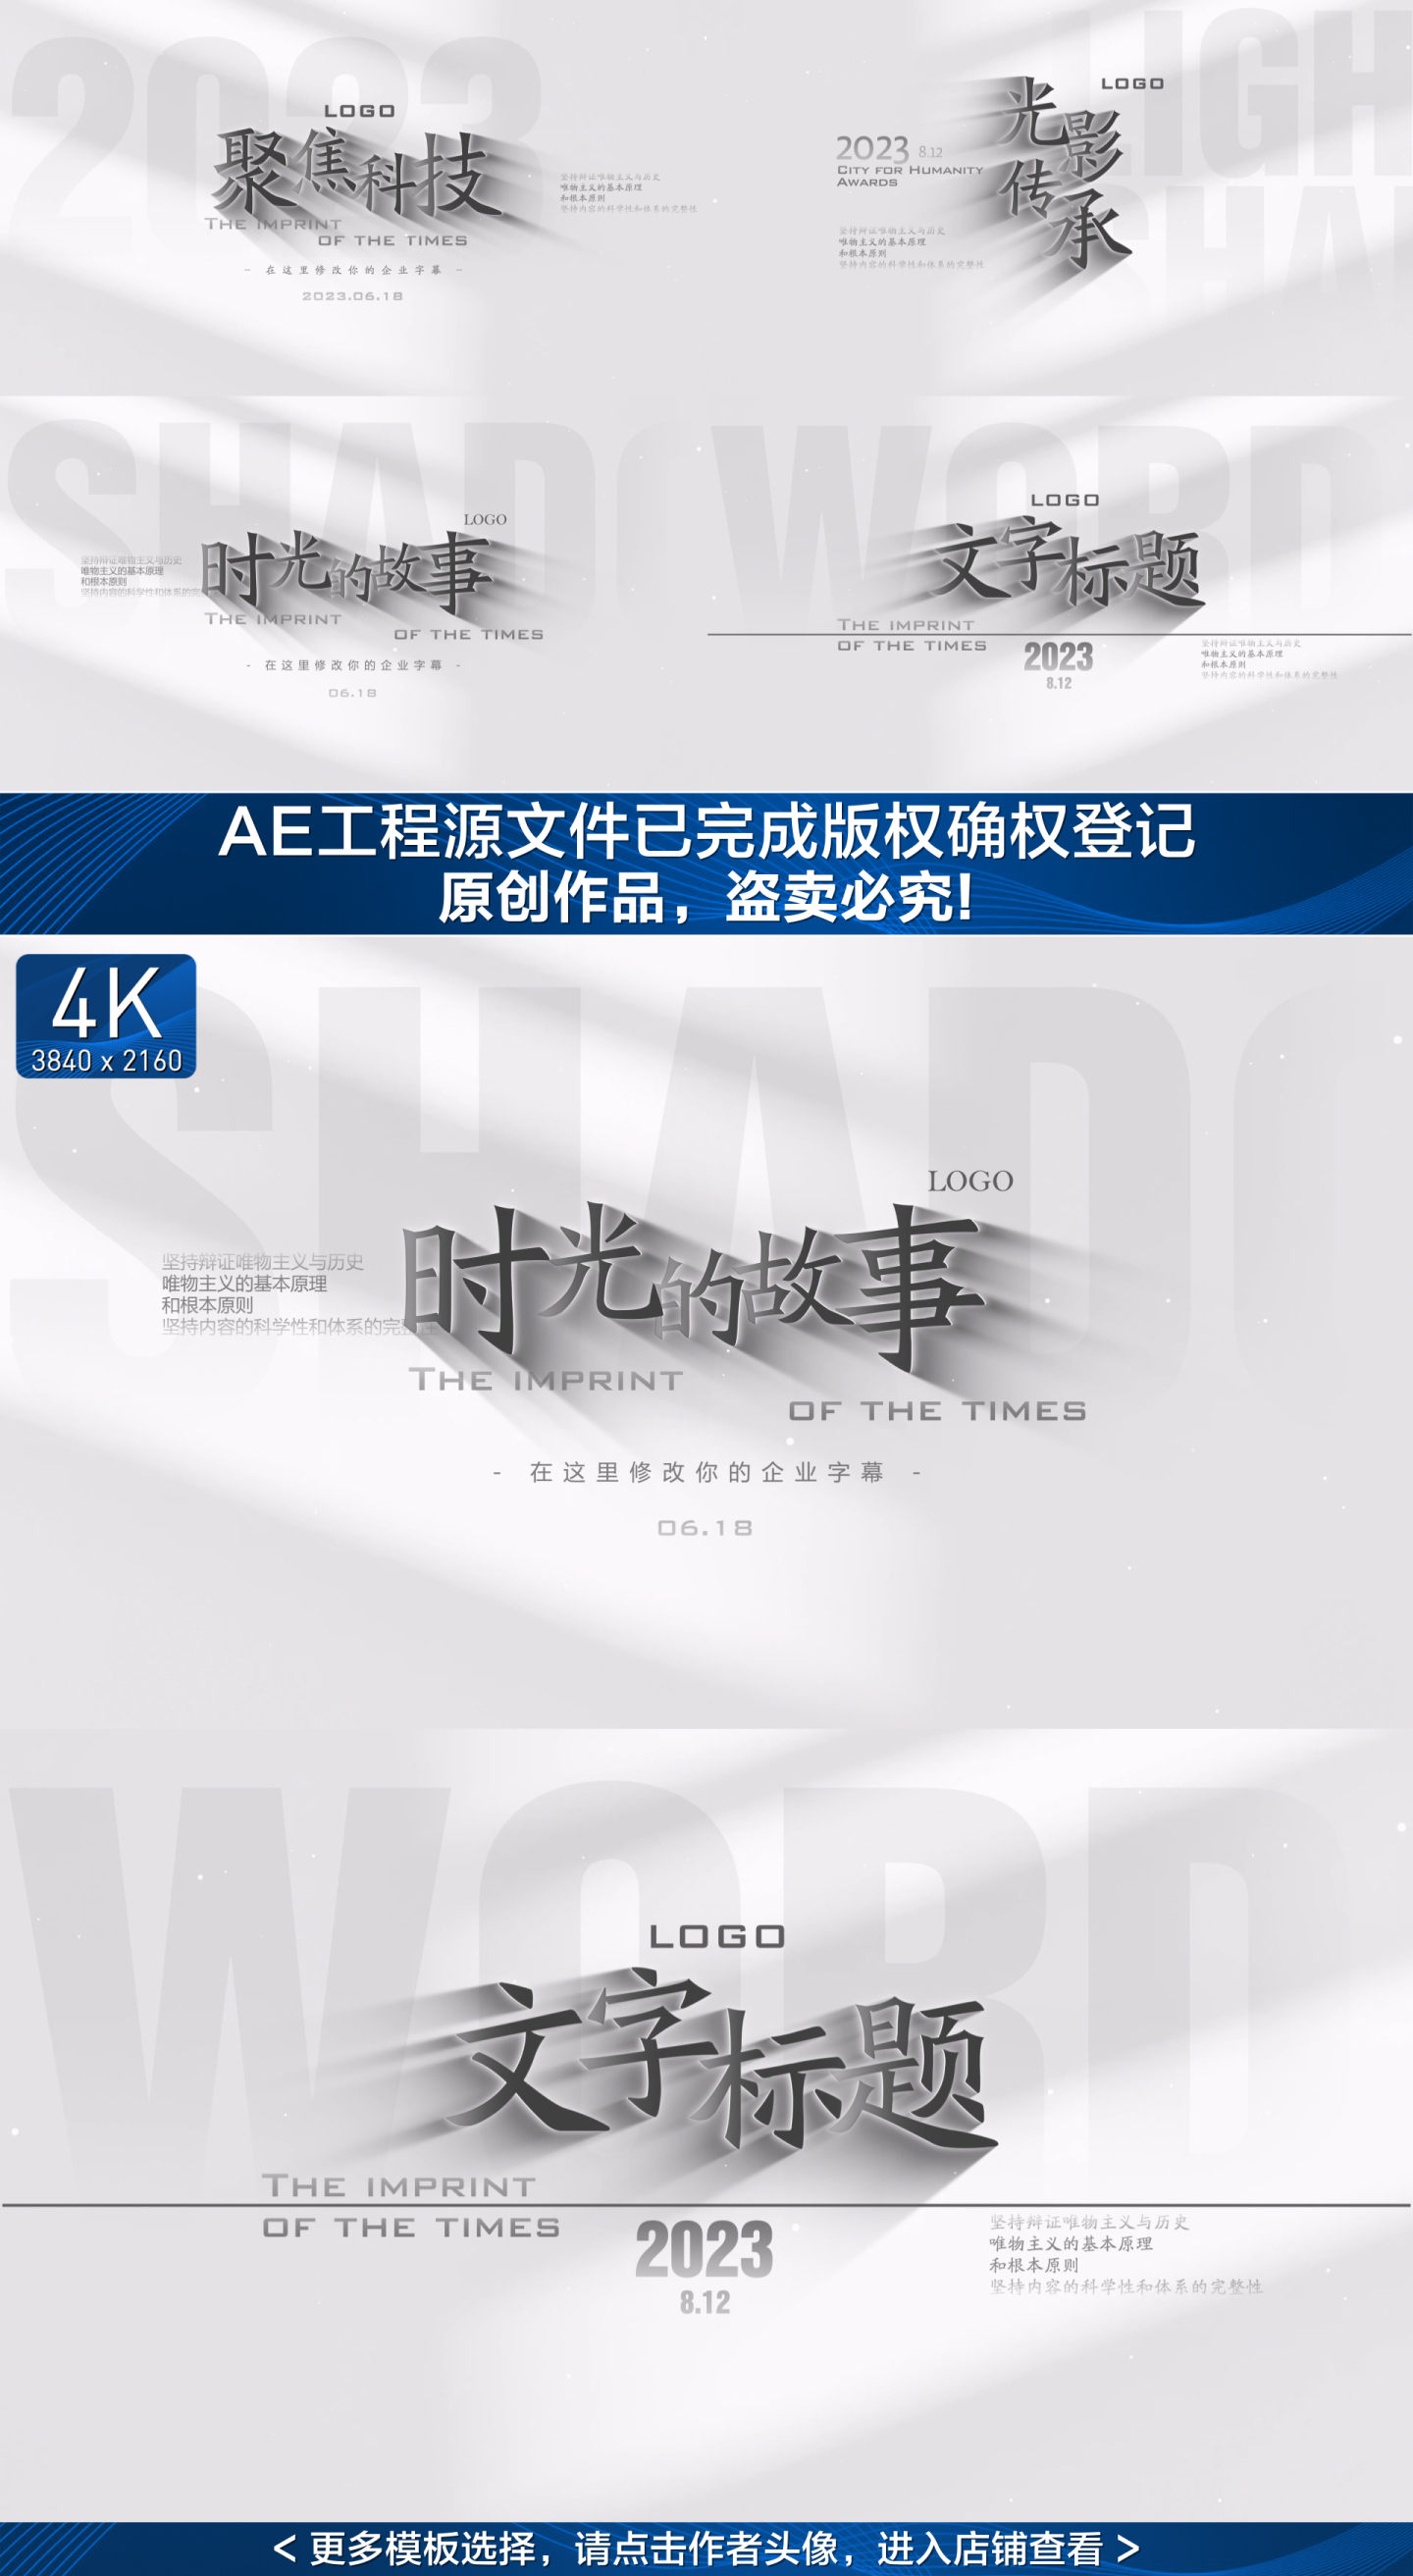 【原创】水墨简约文字广告标题4K